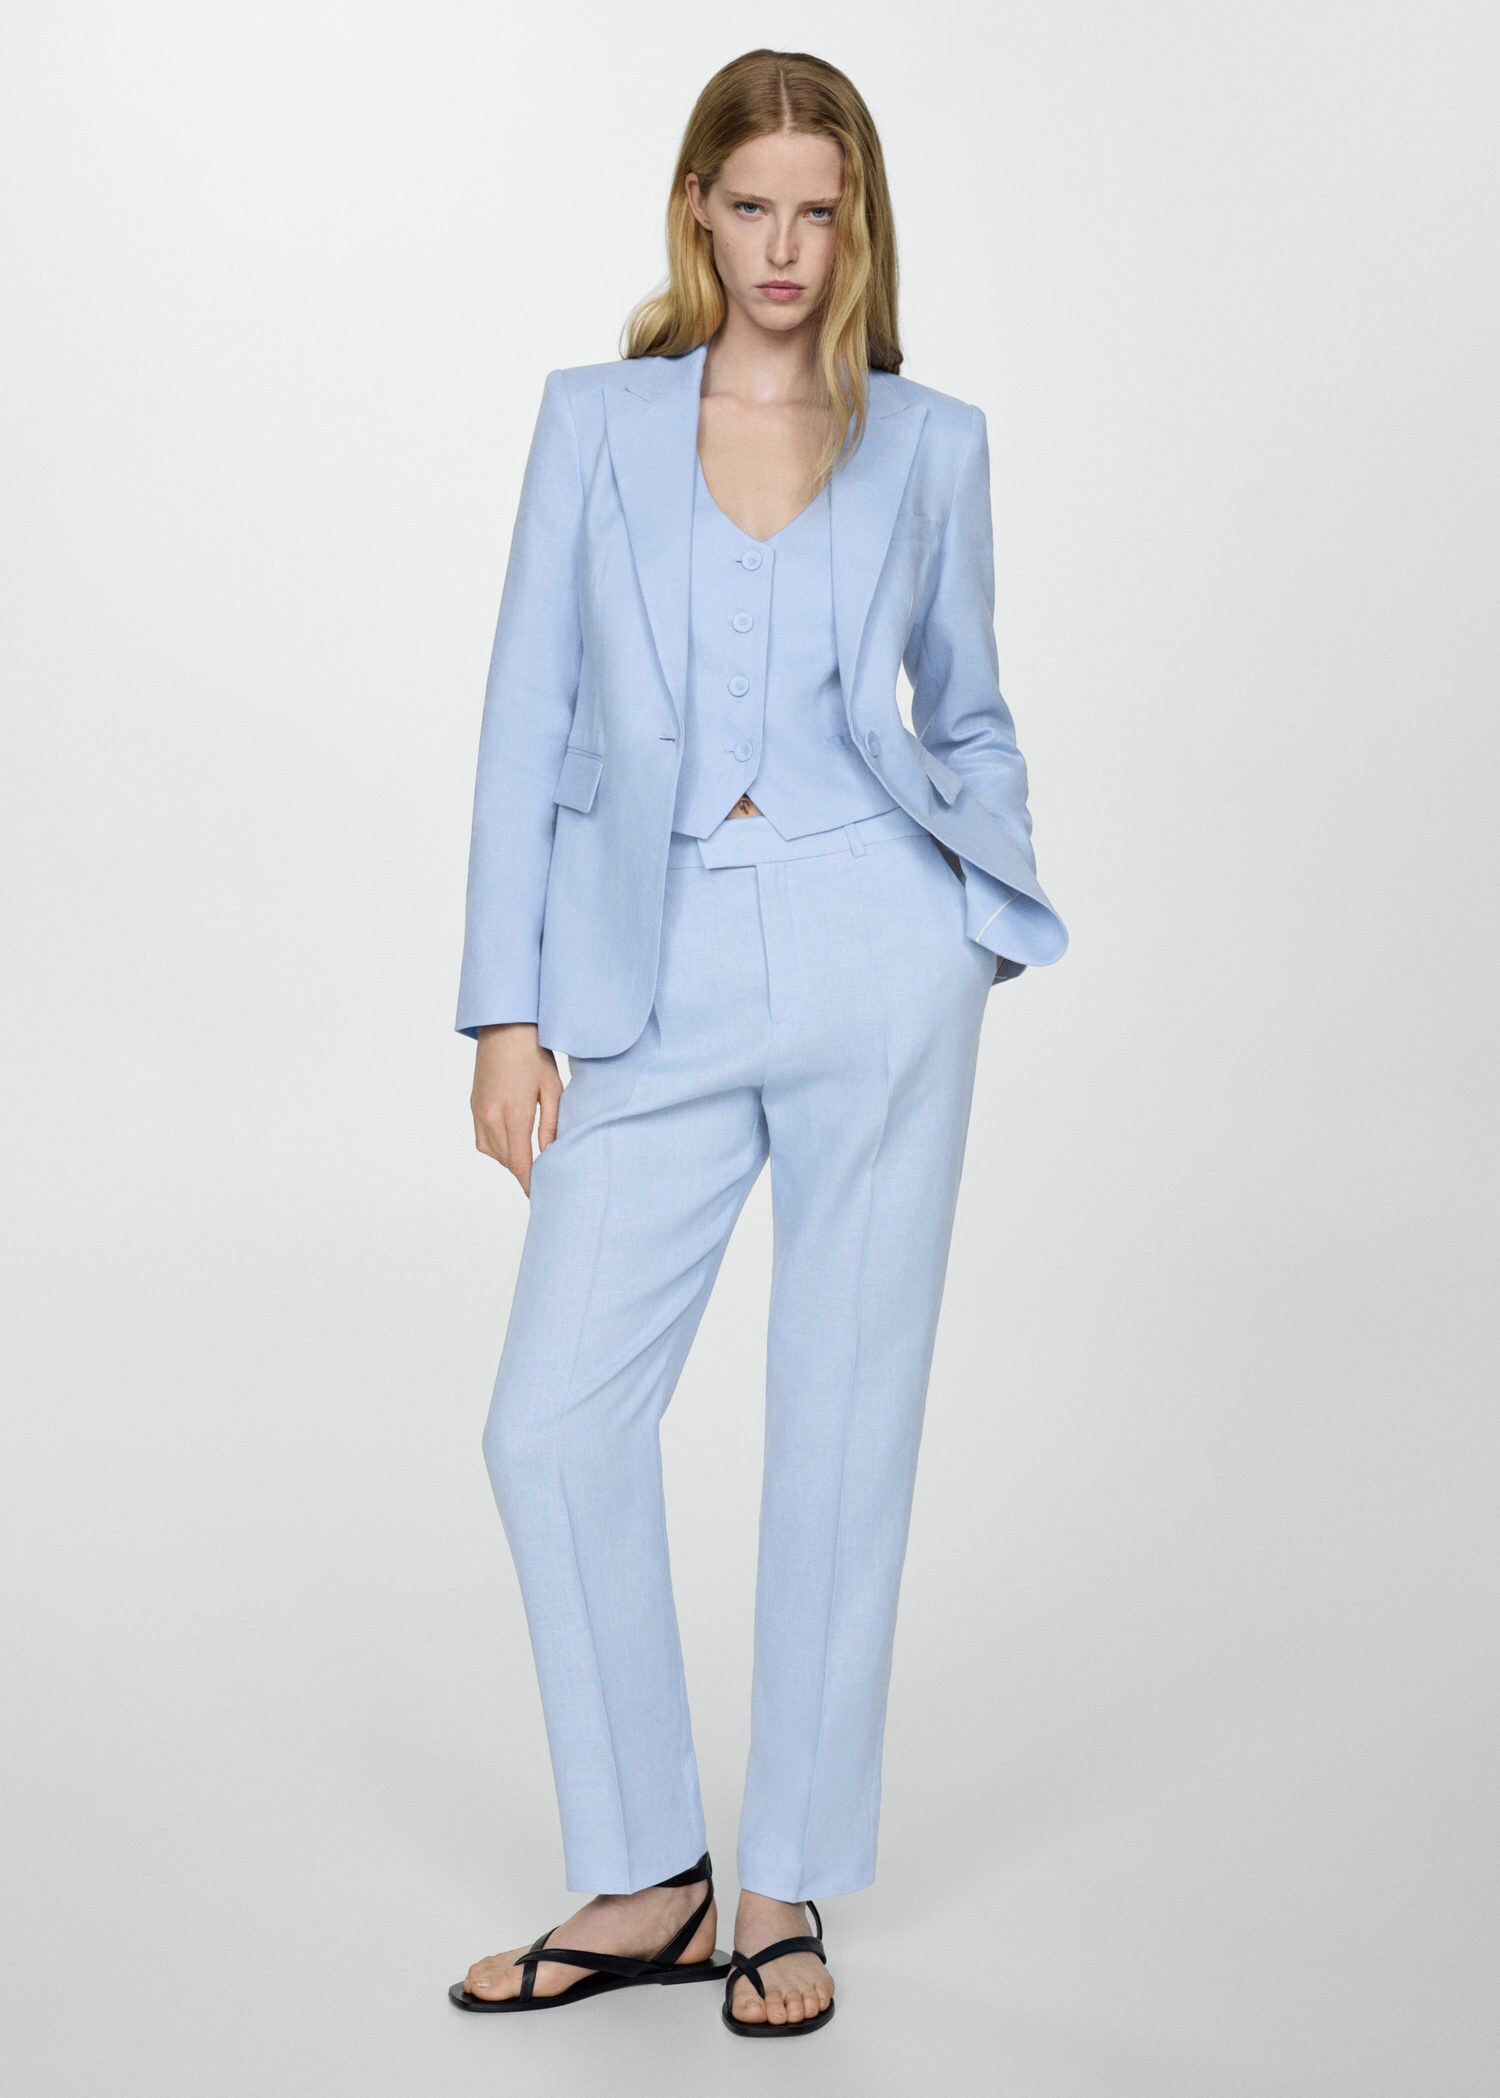 Men's Suits & Blazers | Casual & Smart Blazers | Primark